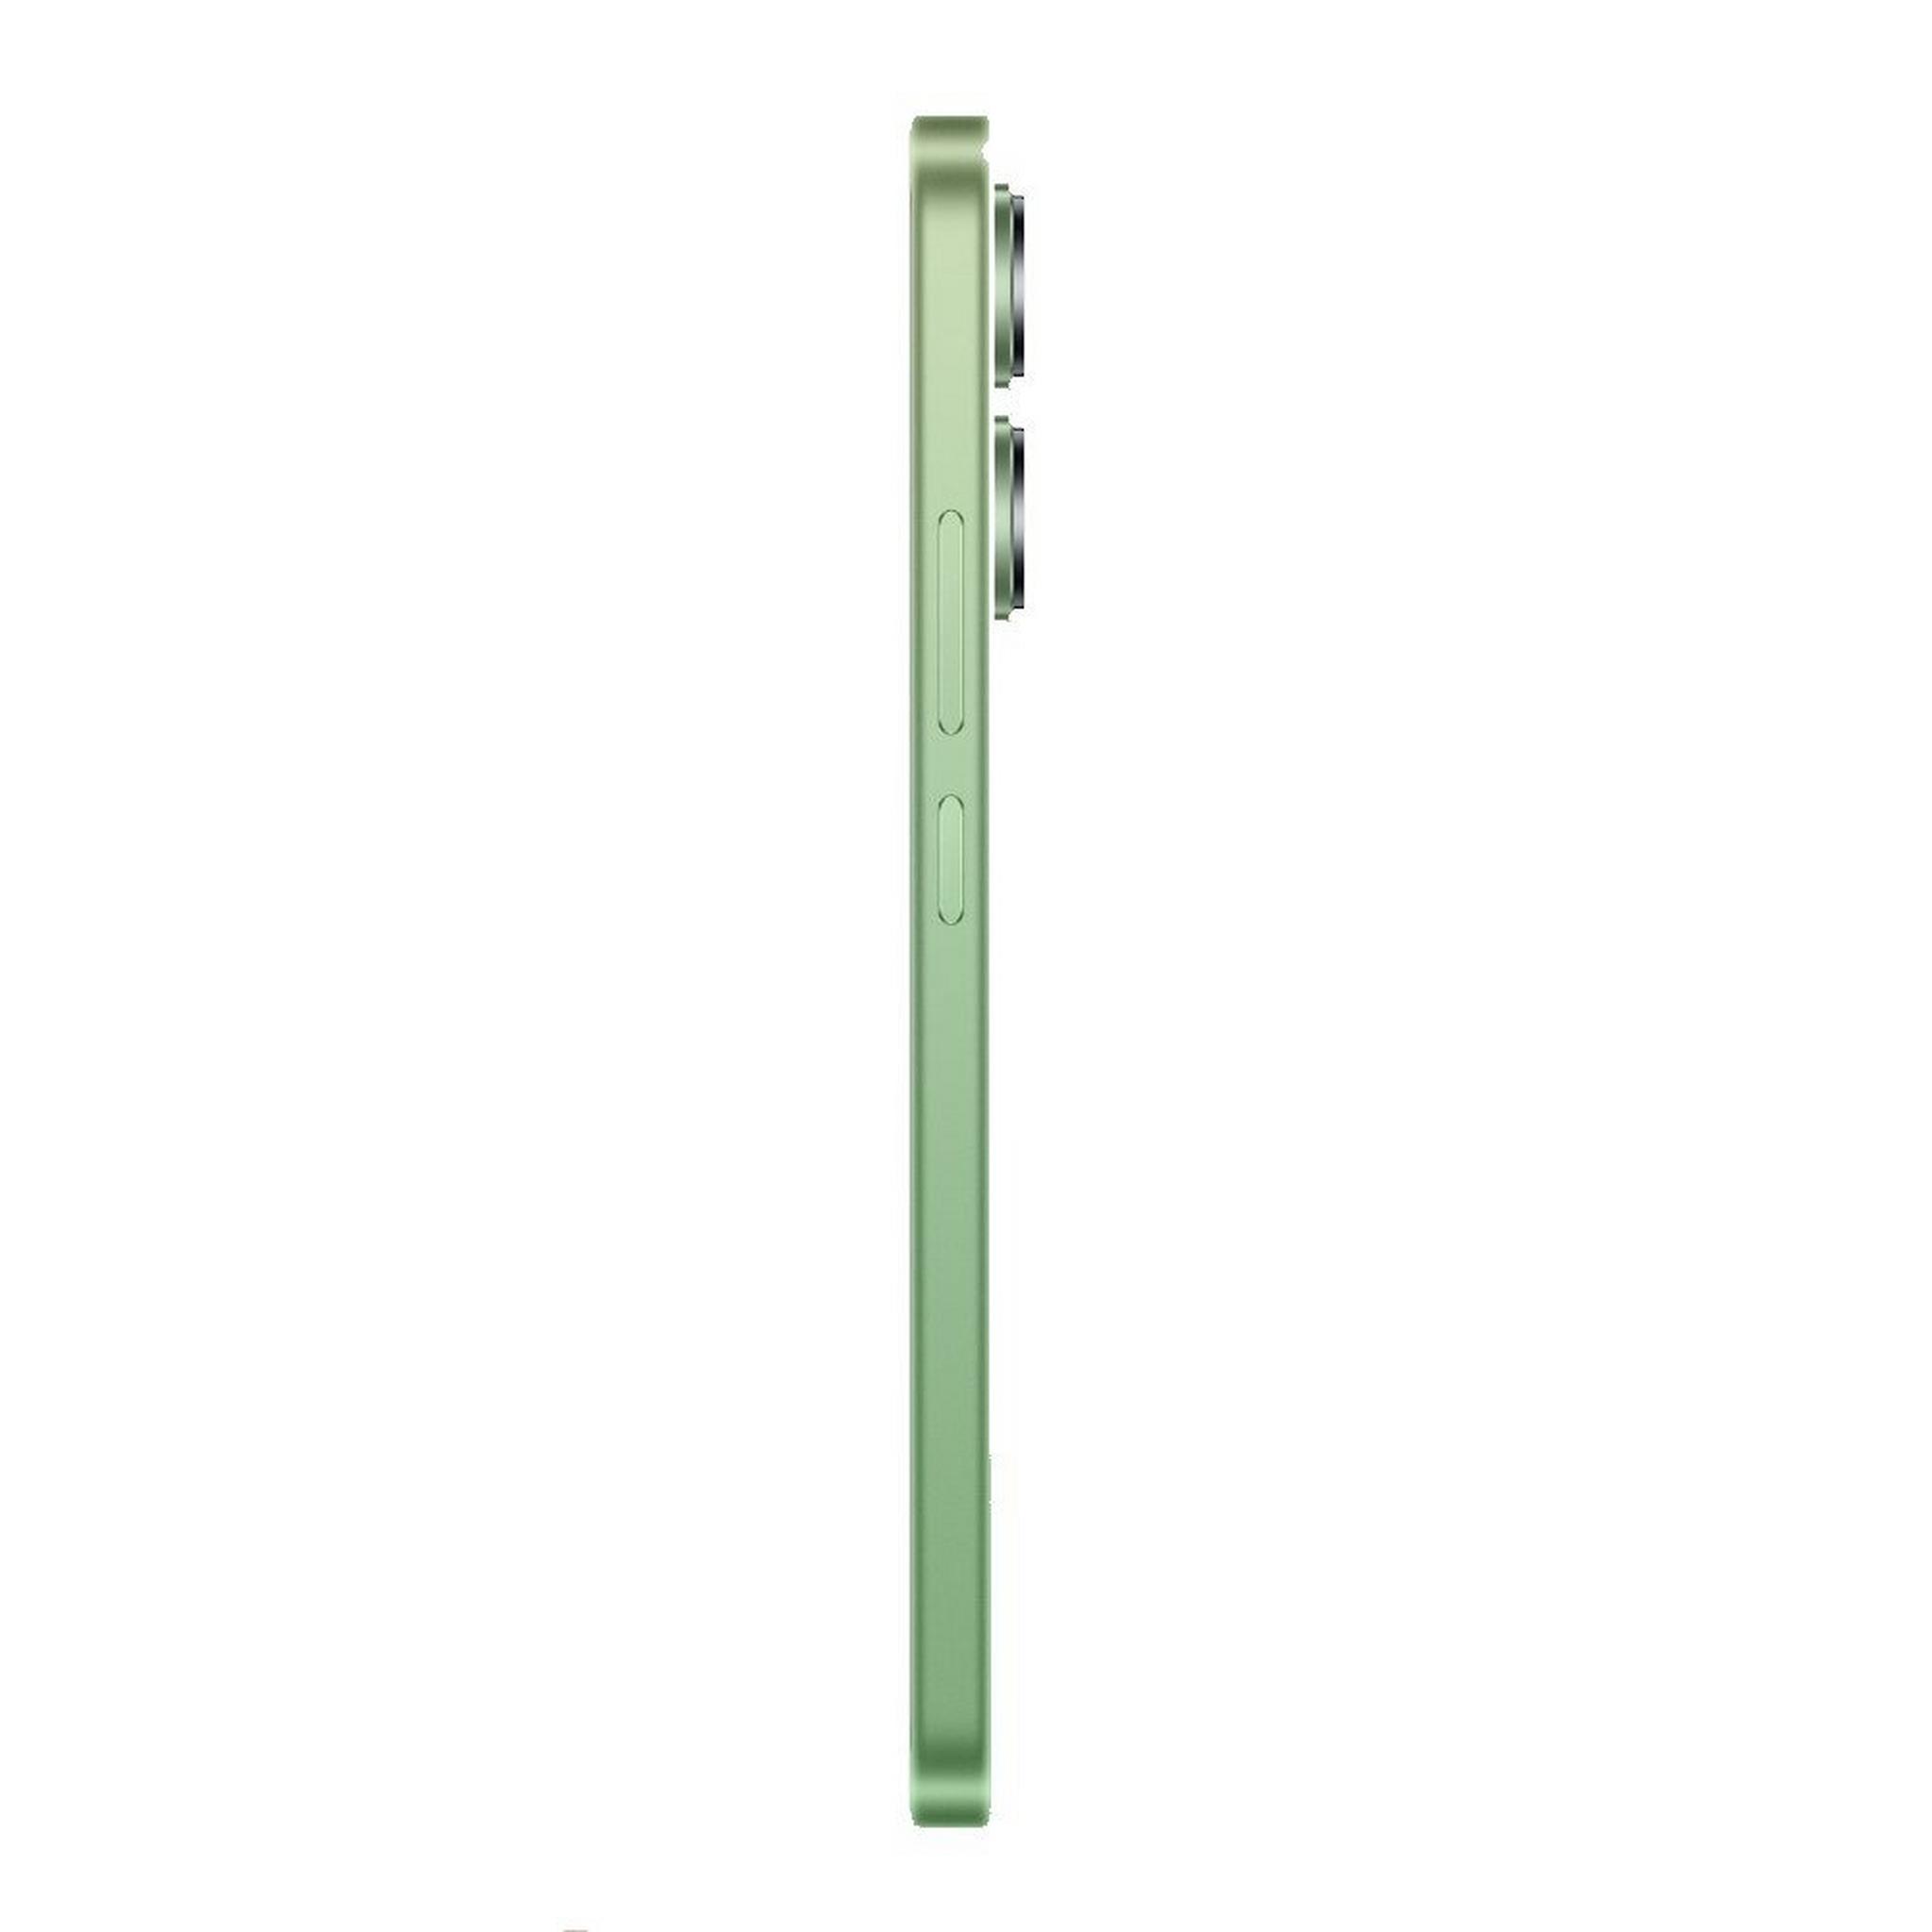 XIAOMI Redmi Note 13 Phone, 6.6-inch, 8GB RAM, 256GB – Green